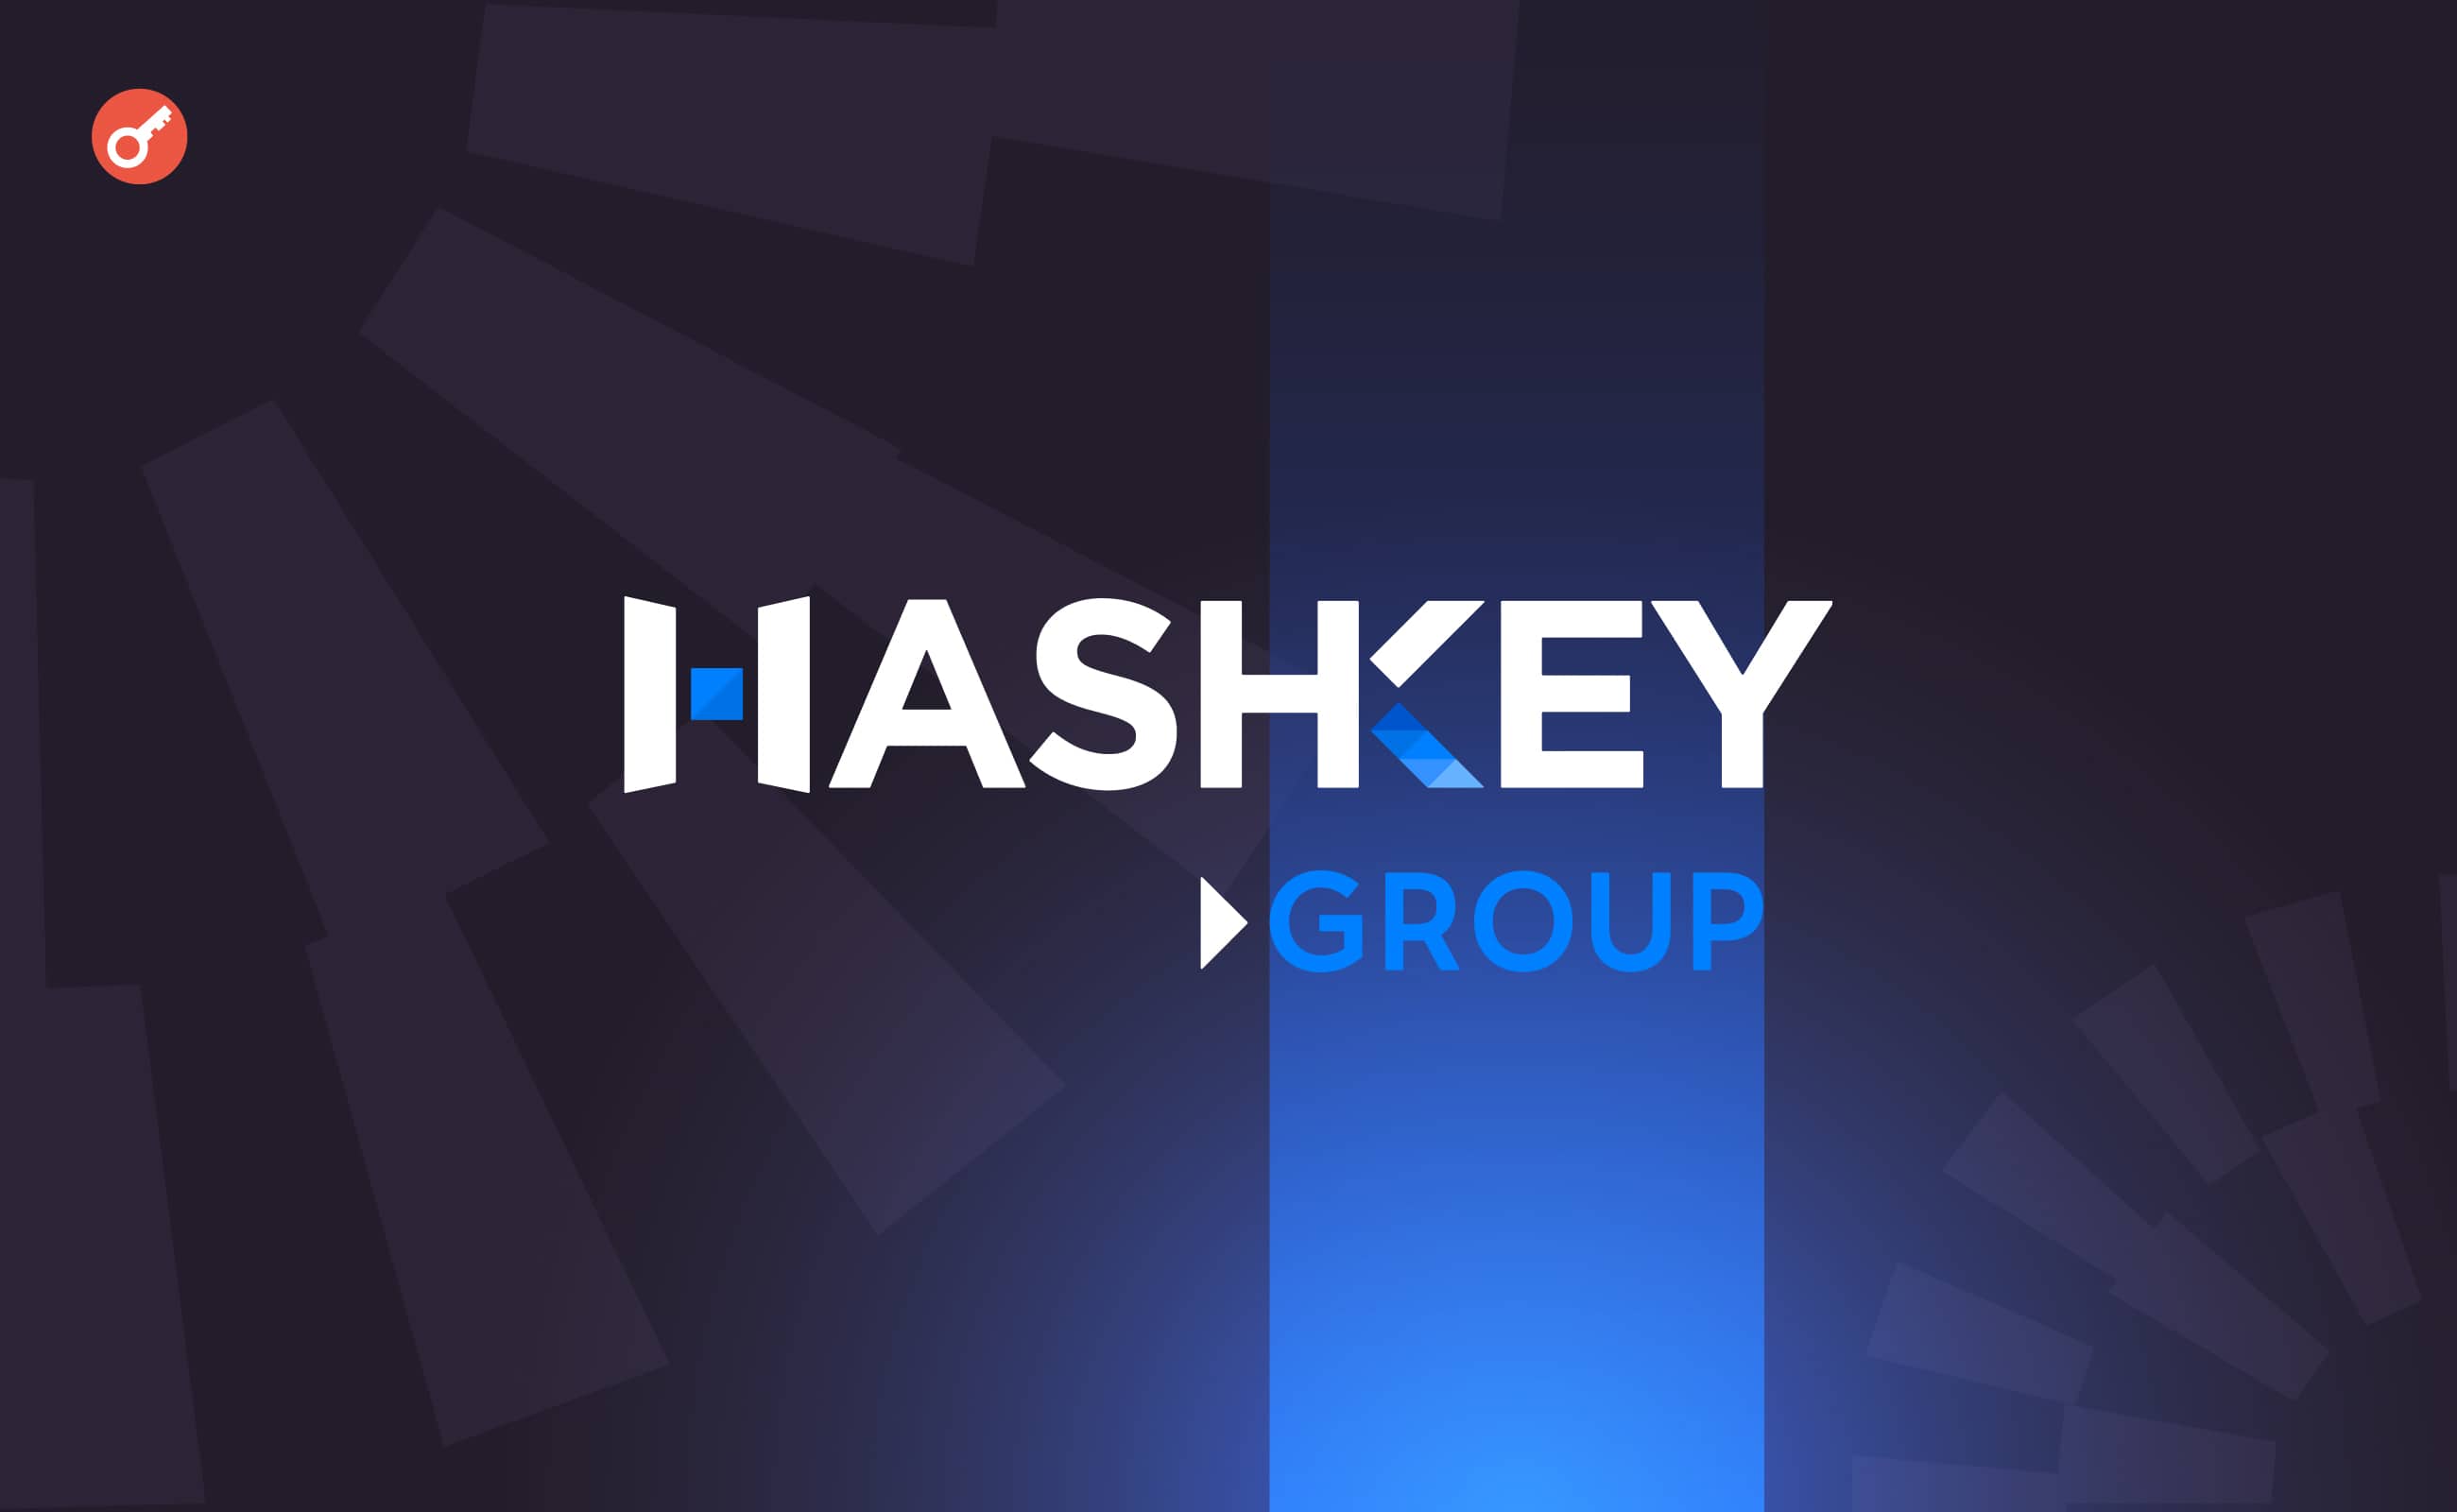 HashKey Group привлекла $100 млн при оценке в $1,2 млрд. Заглавный коллаж новости.